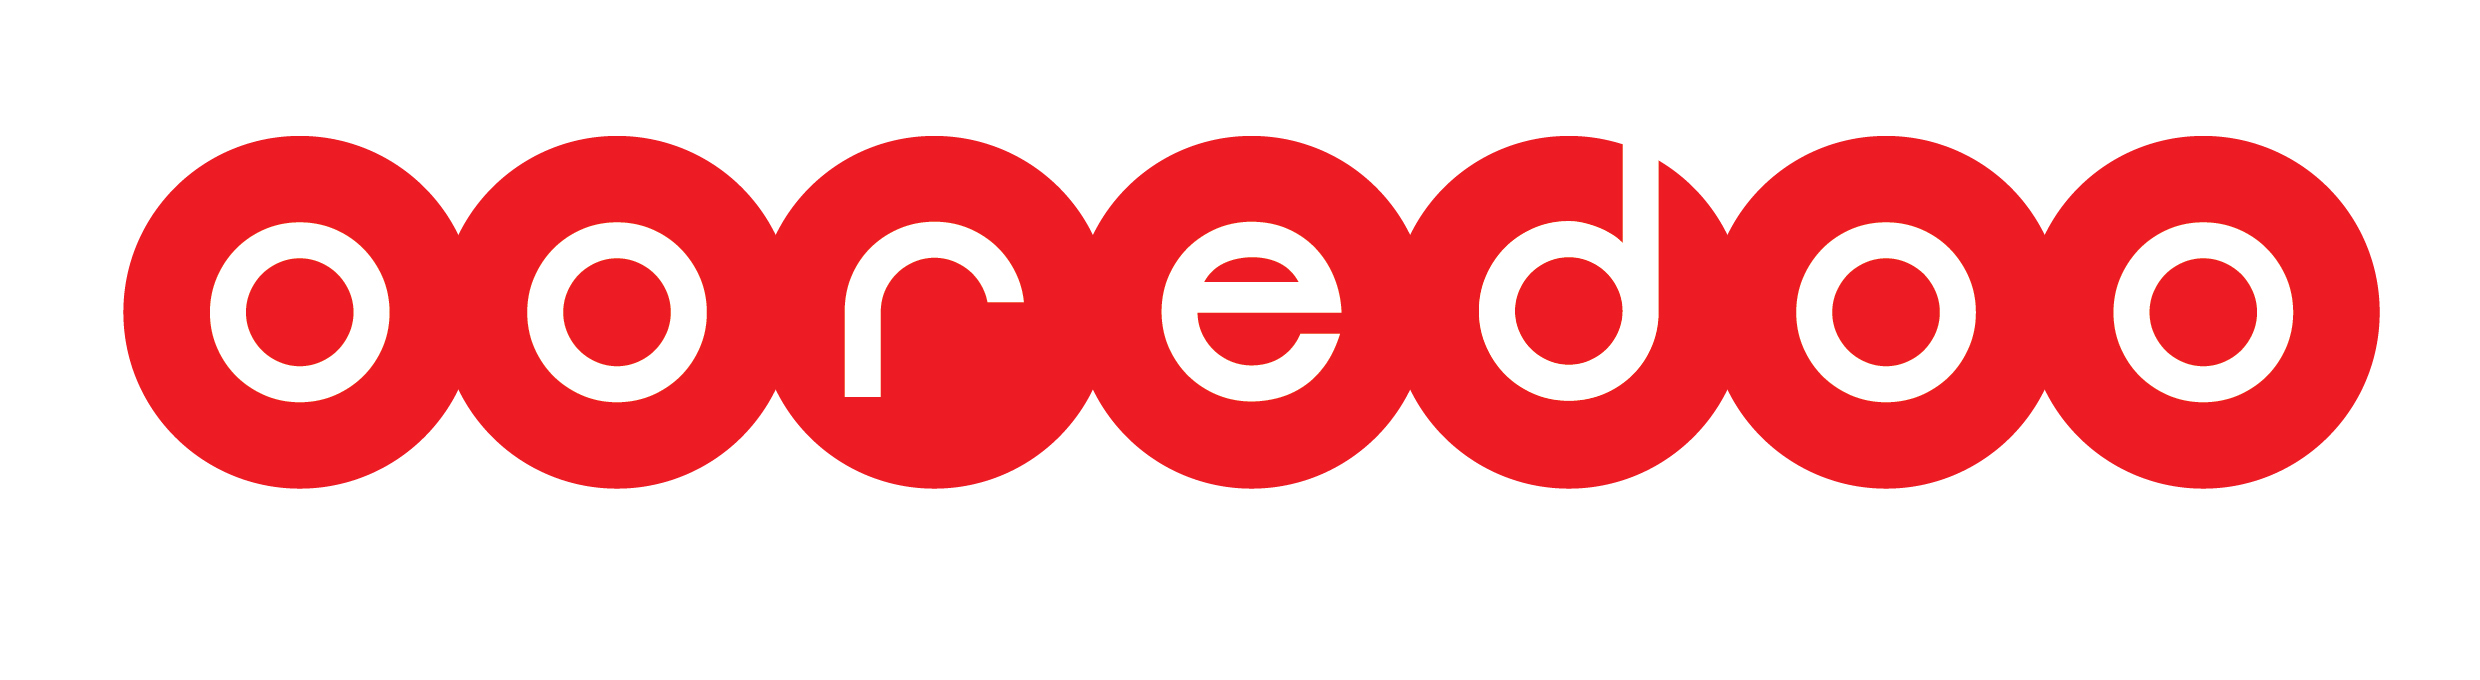 ظرف الفهد البديل  كونا : (الوطنية للاتصالات) تغير اسمها الى (Ooredoo) ابتداءا من يوم غد -  اقتصاد - 22/05/2014